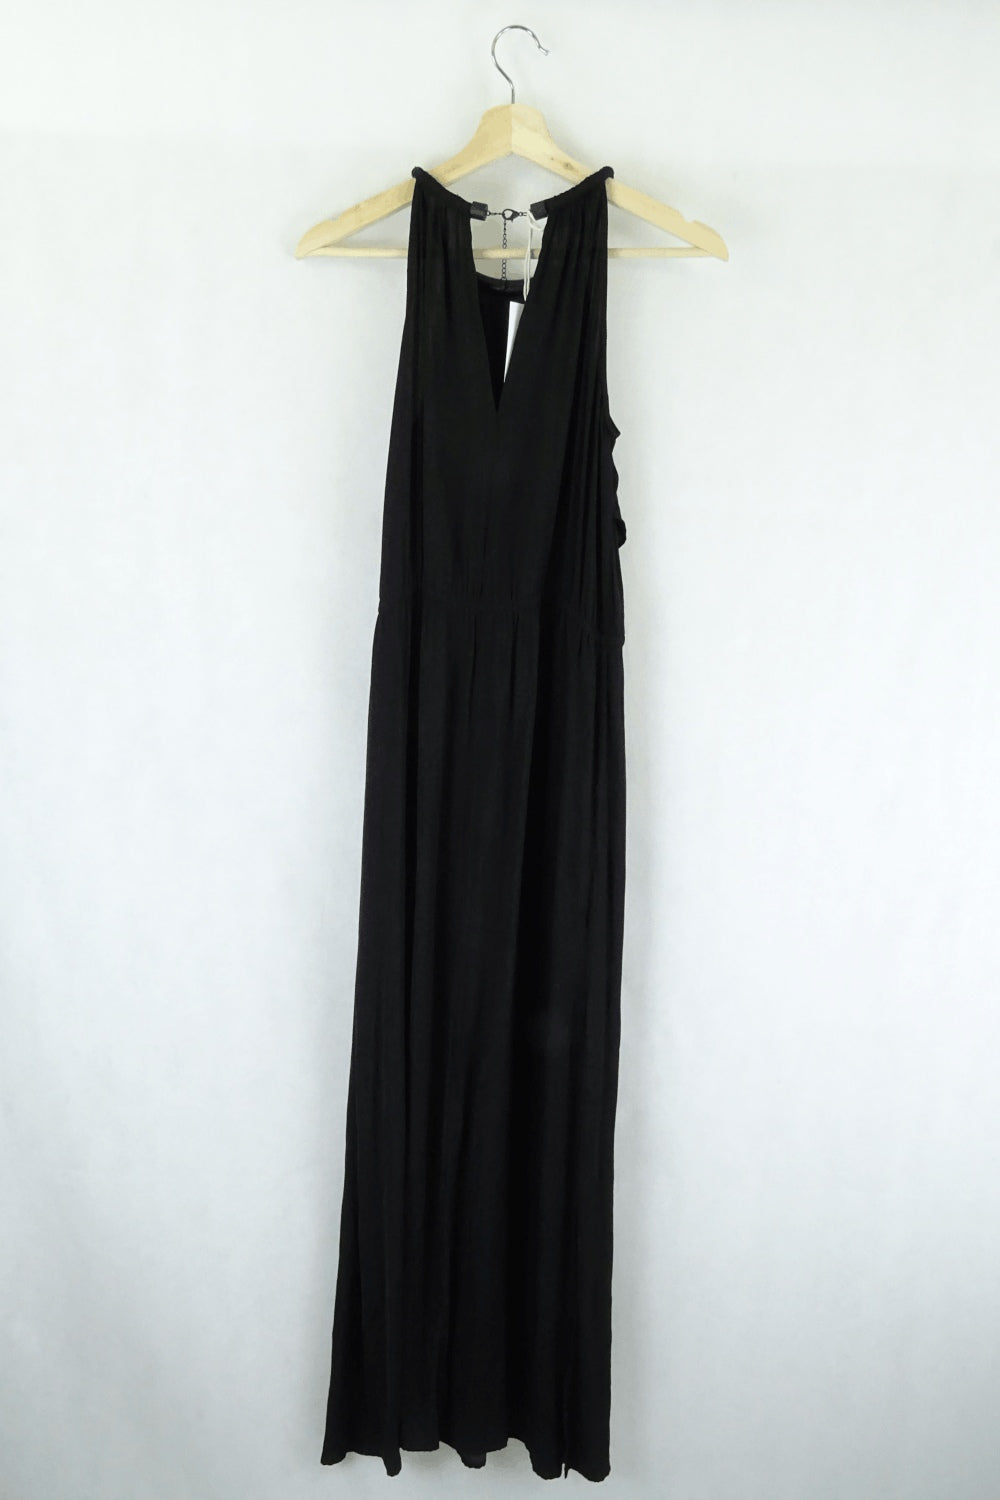 Witchery black dress 6